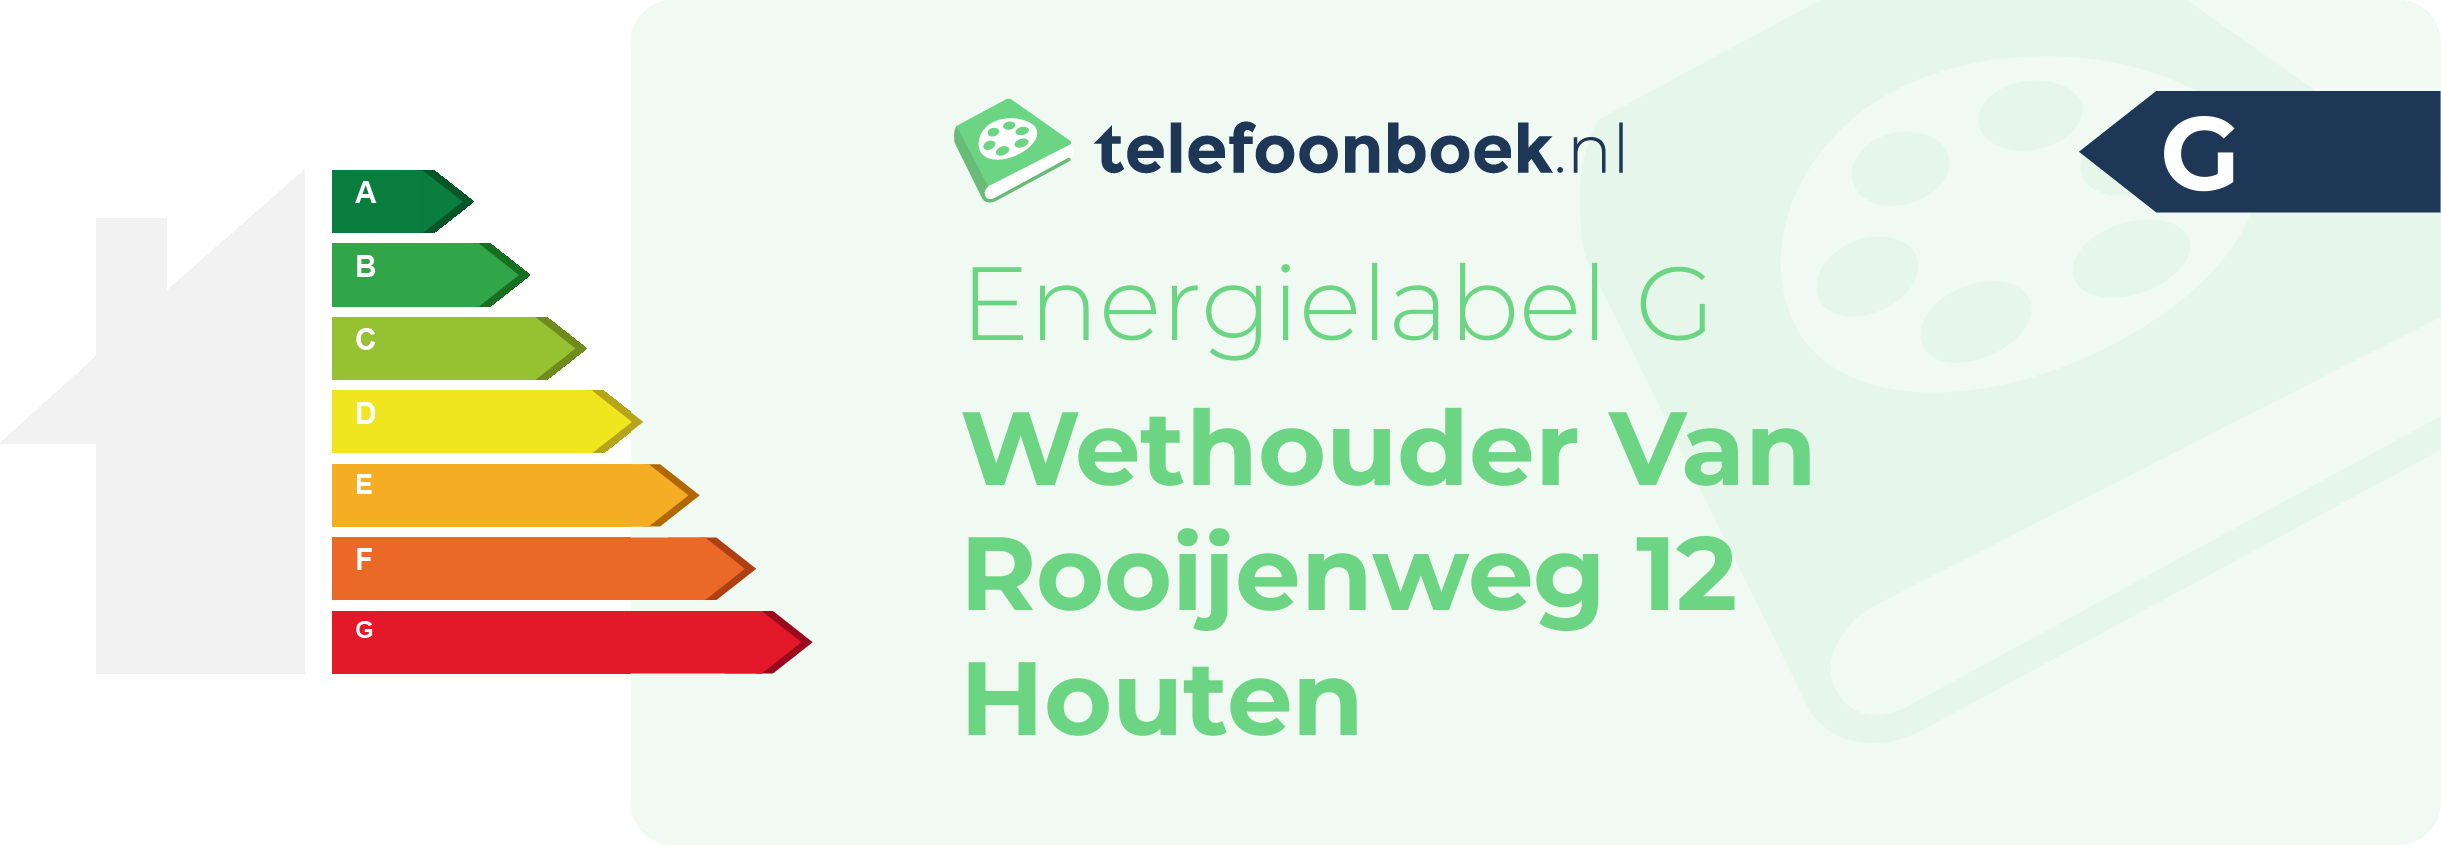 Energielabel Wethouder Van Rooijenweg 12 Houten